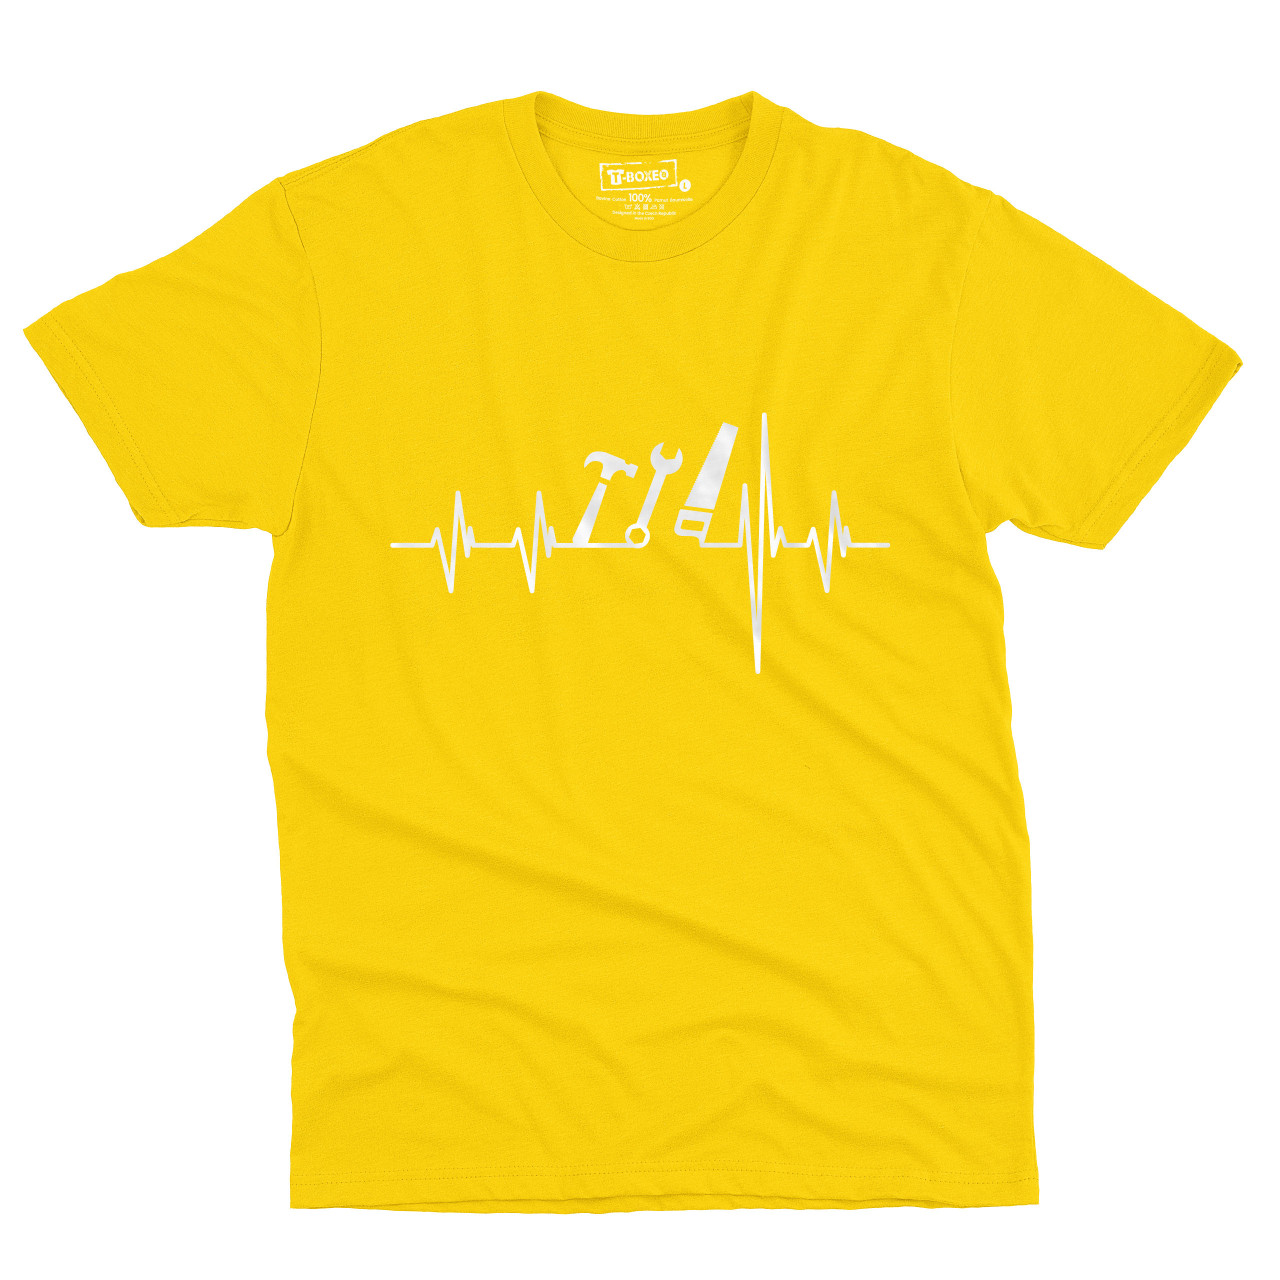 Pánské tričko s potiskem "Srdeční tep Nářadí"